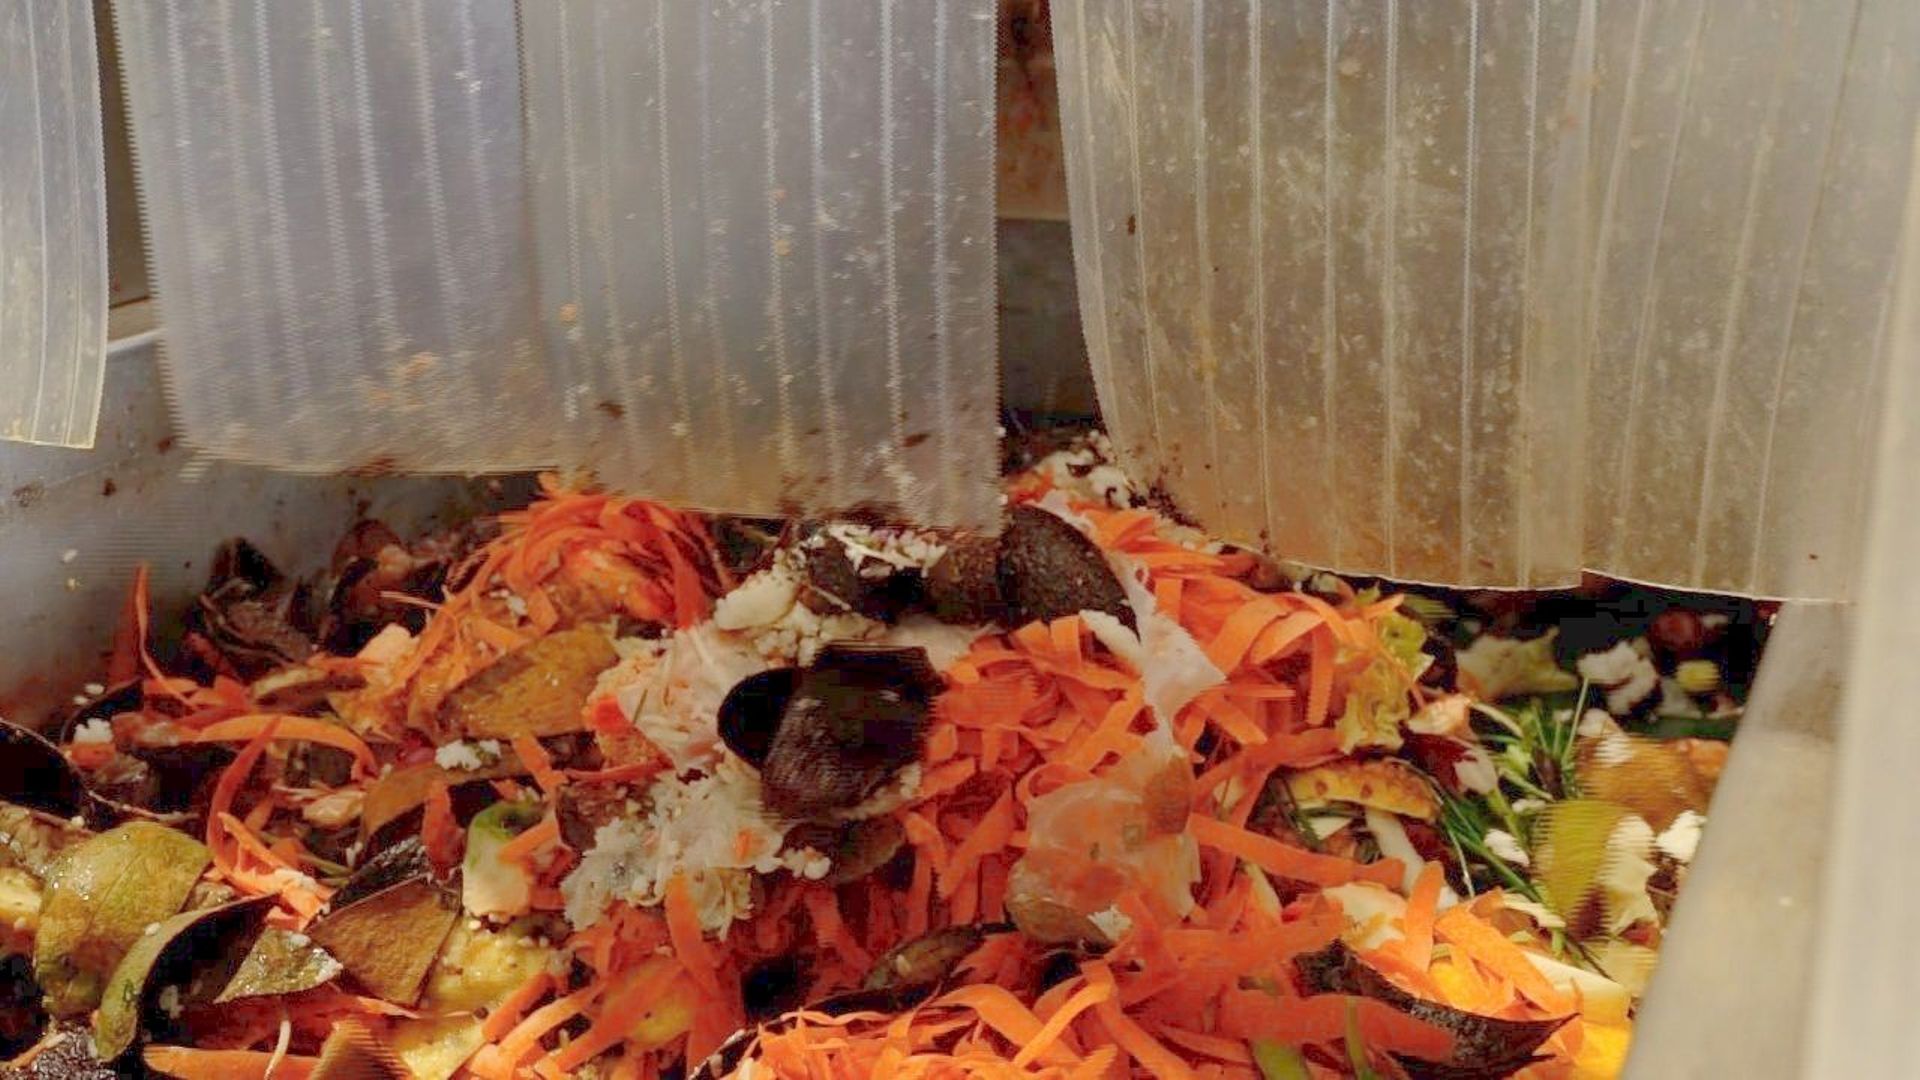 100% zéro déchet : un objectif à portée de main pour les déchets alimentaires. Photo d'illustration.